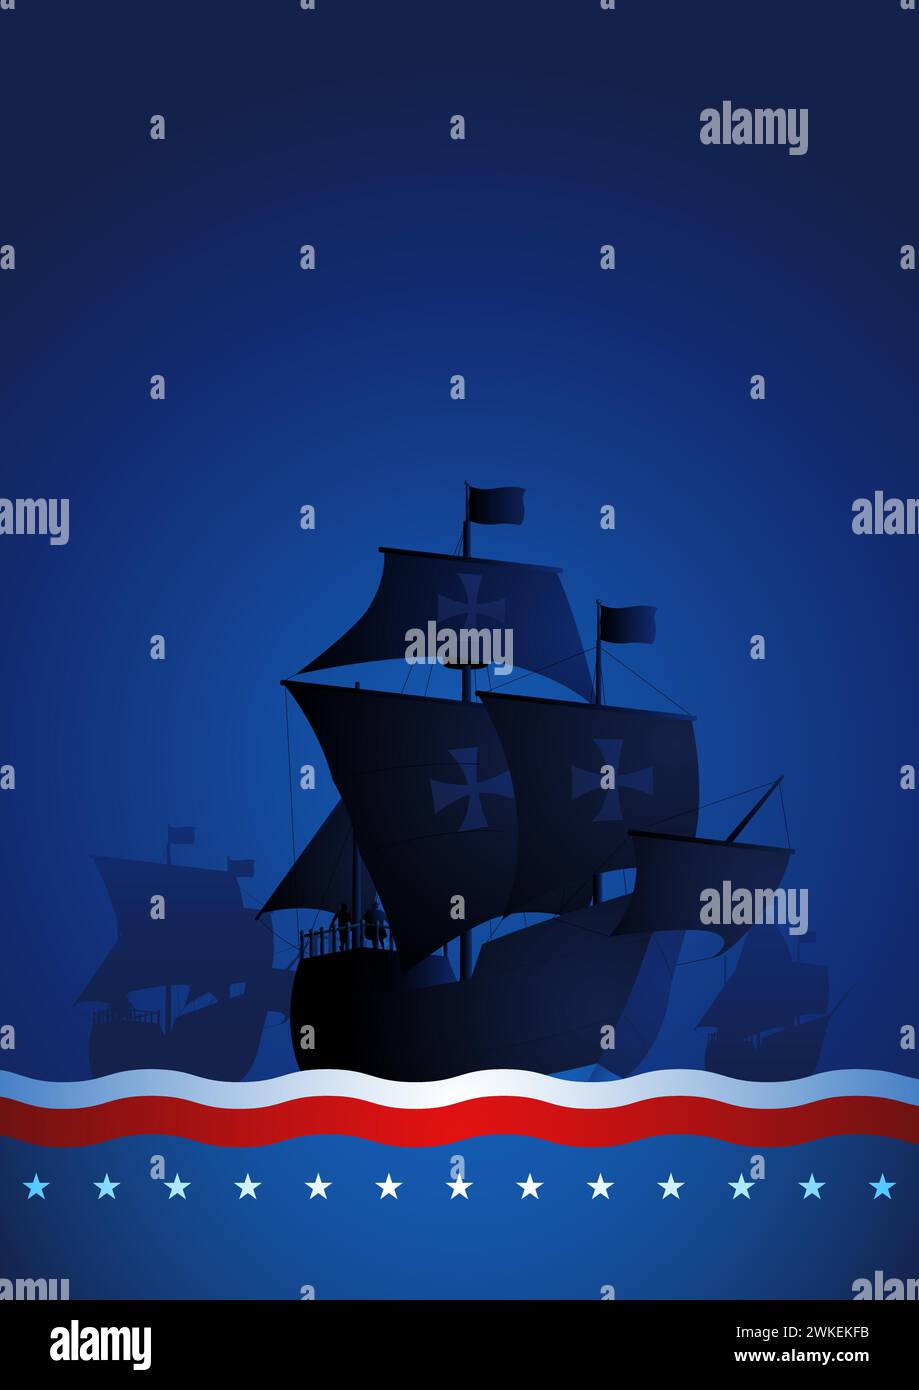 Columbus-Schiff, La Santa Maria, Pinta und Nina segeln über den riesigen Ozean auf blauem Hintergrund. Es symbolisiert historische Entdeckungen und den Geist, zu denen es geht Stock Vektor